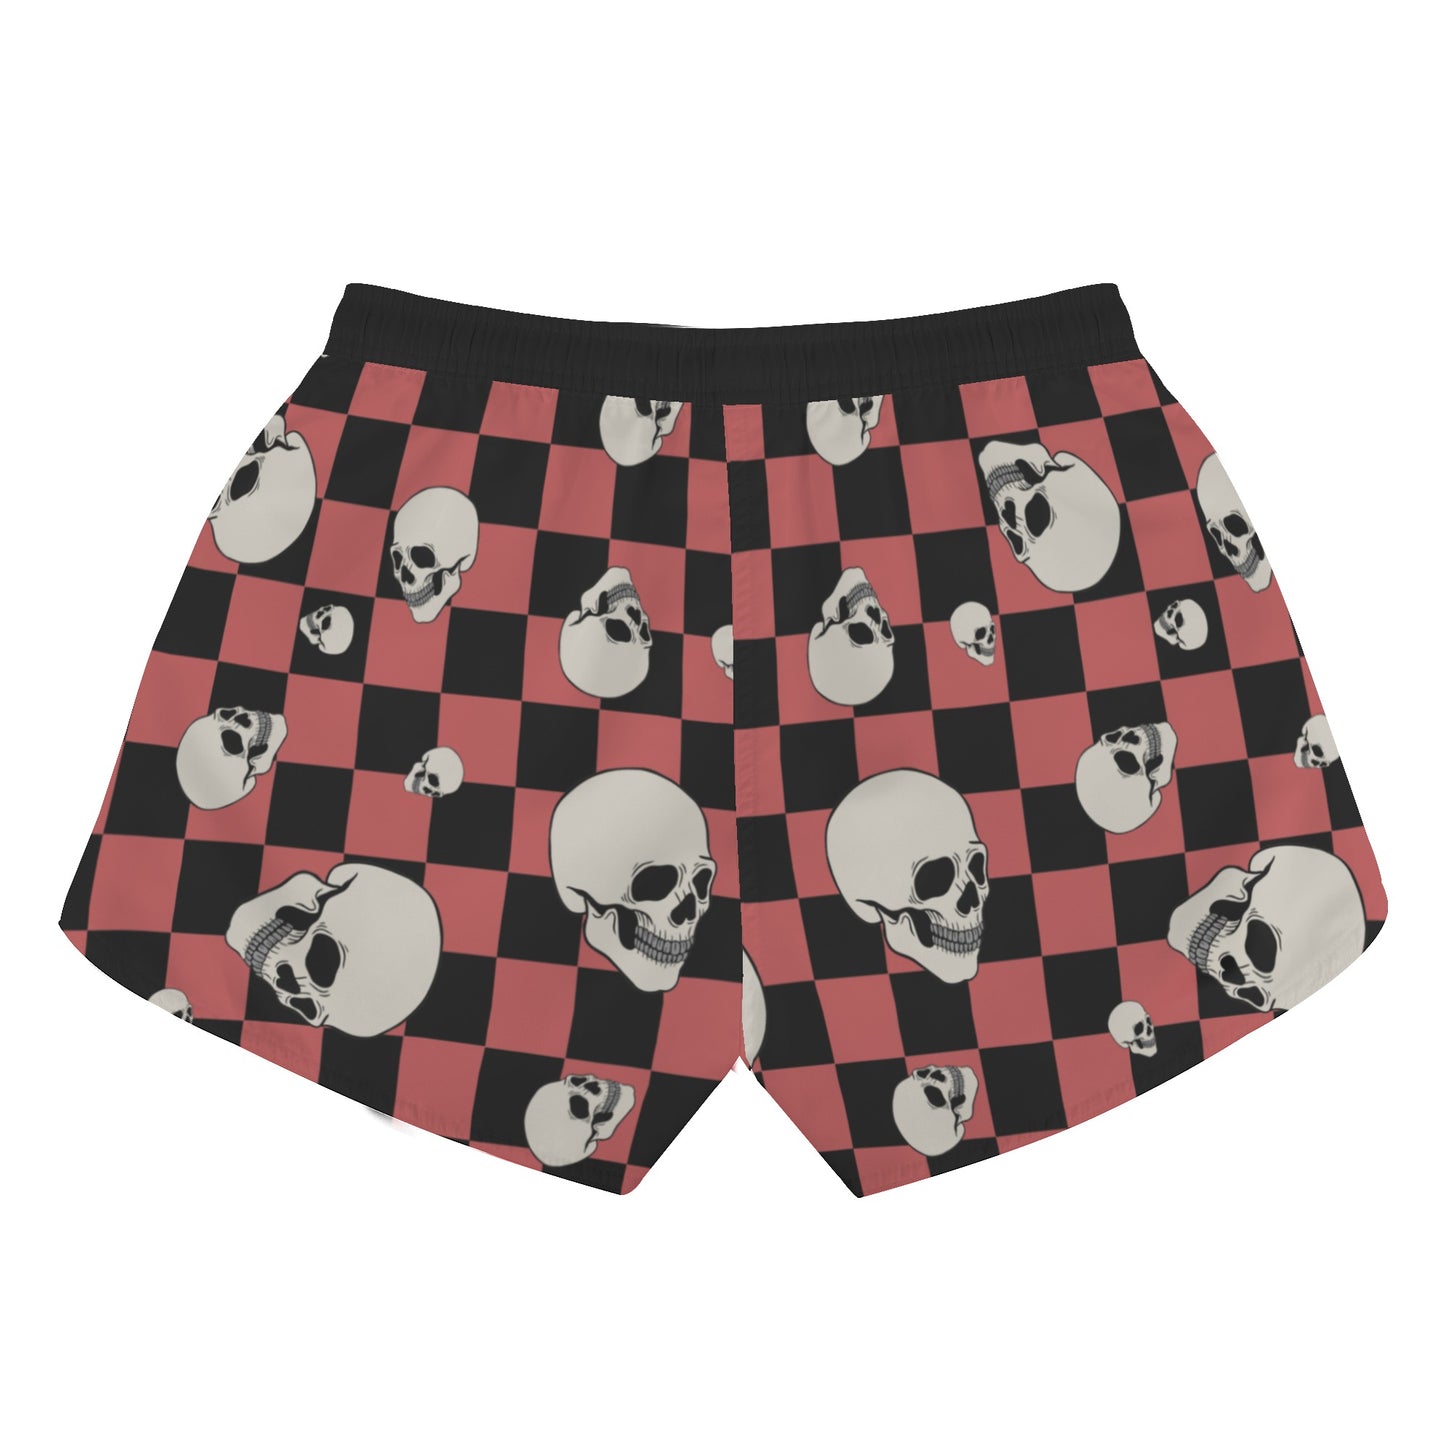 Checkers and Skulls Casual Shorts